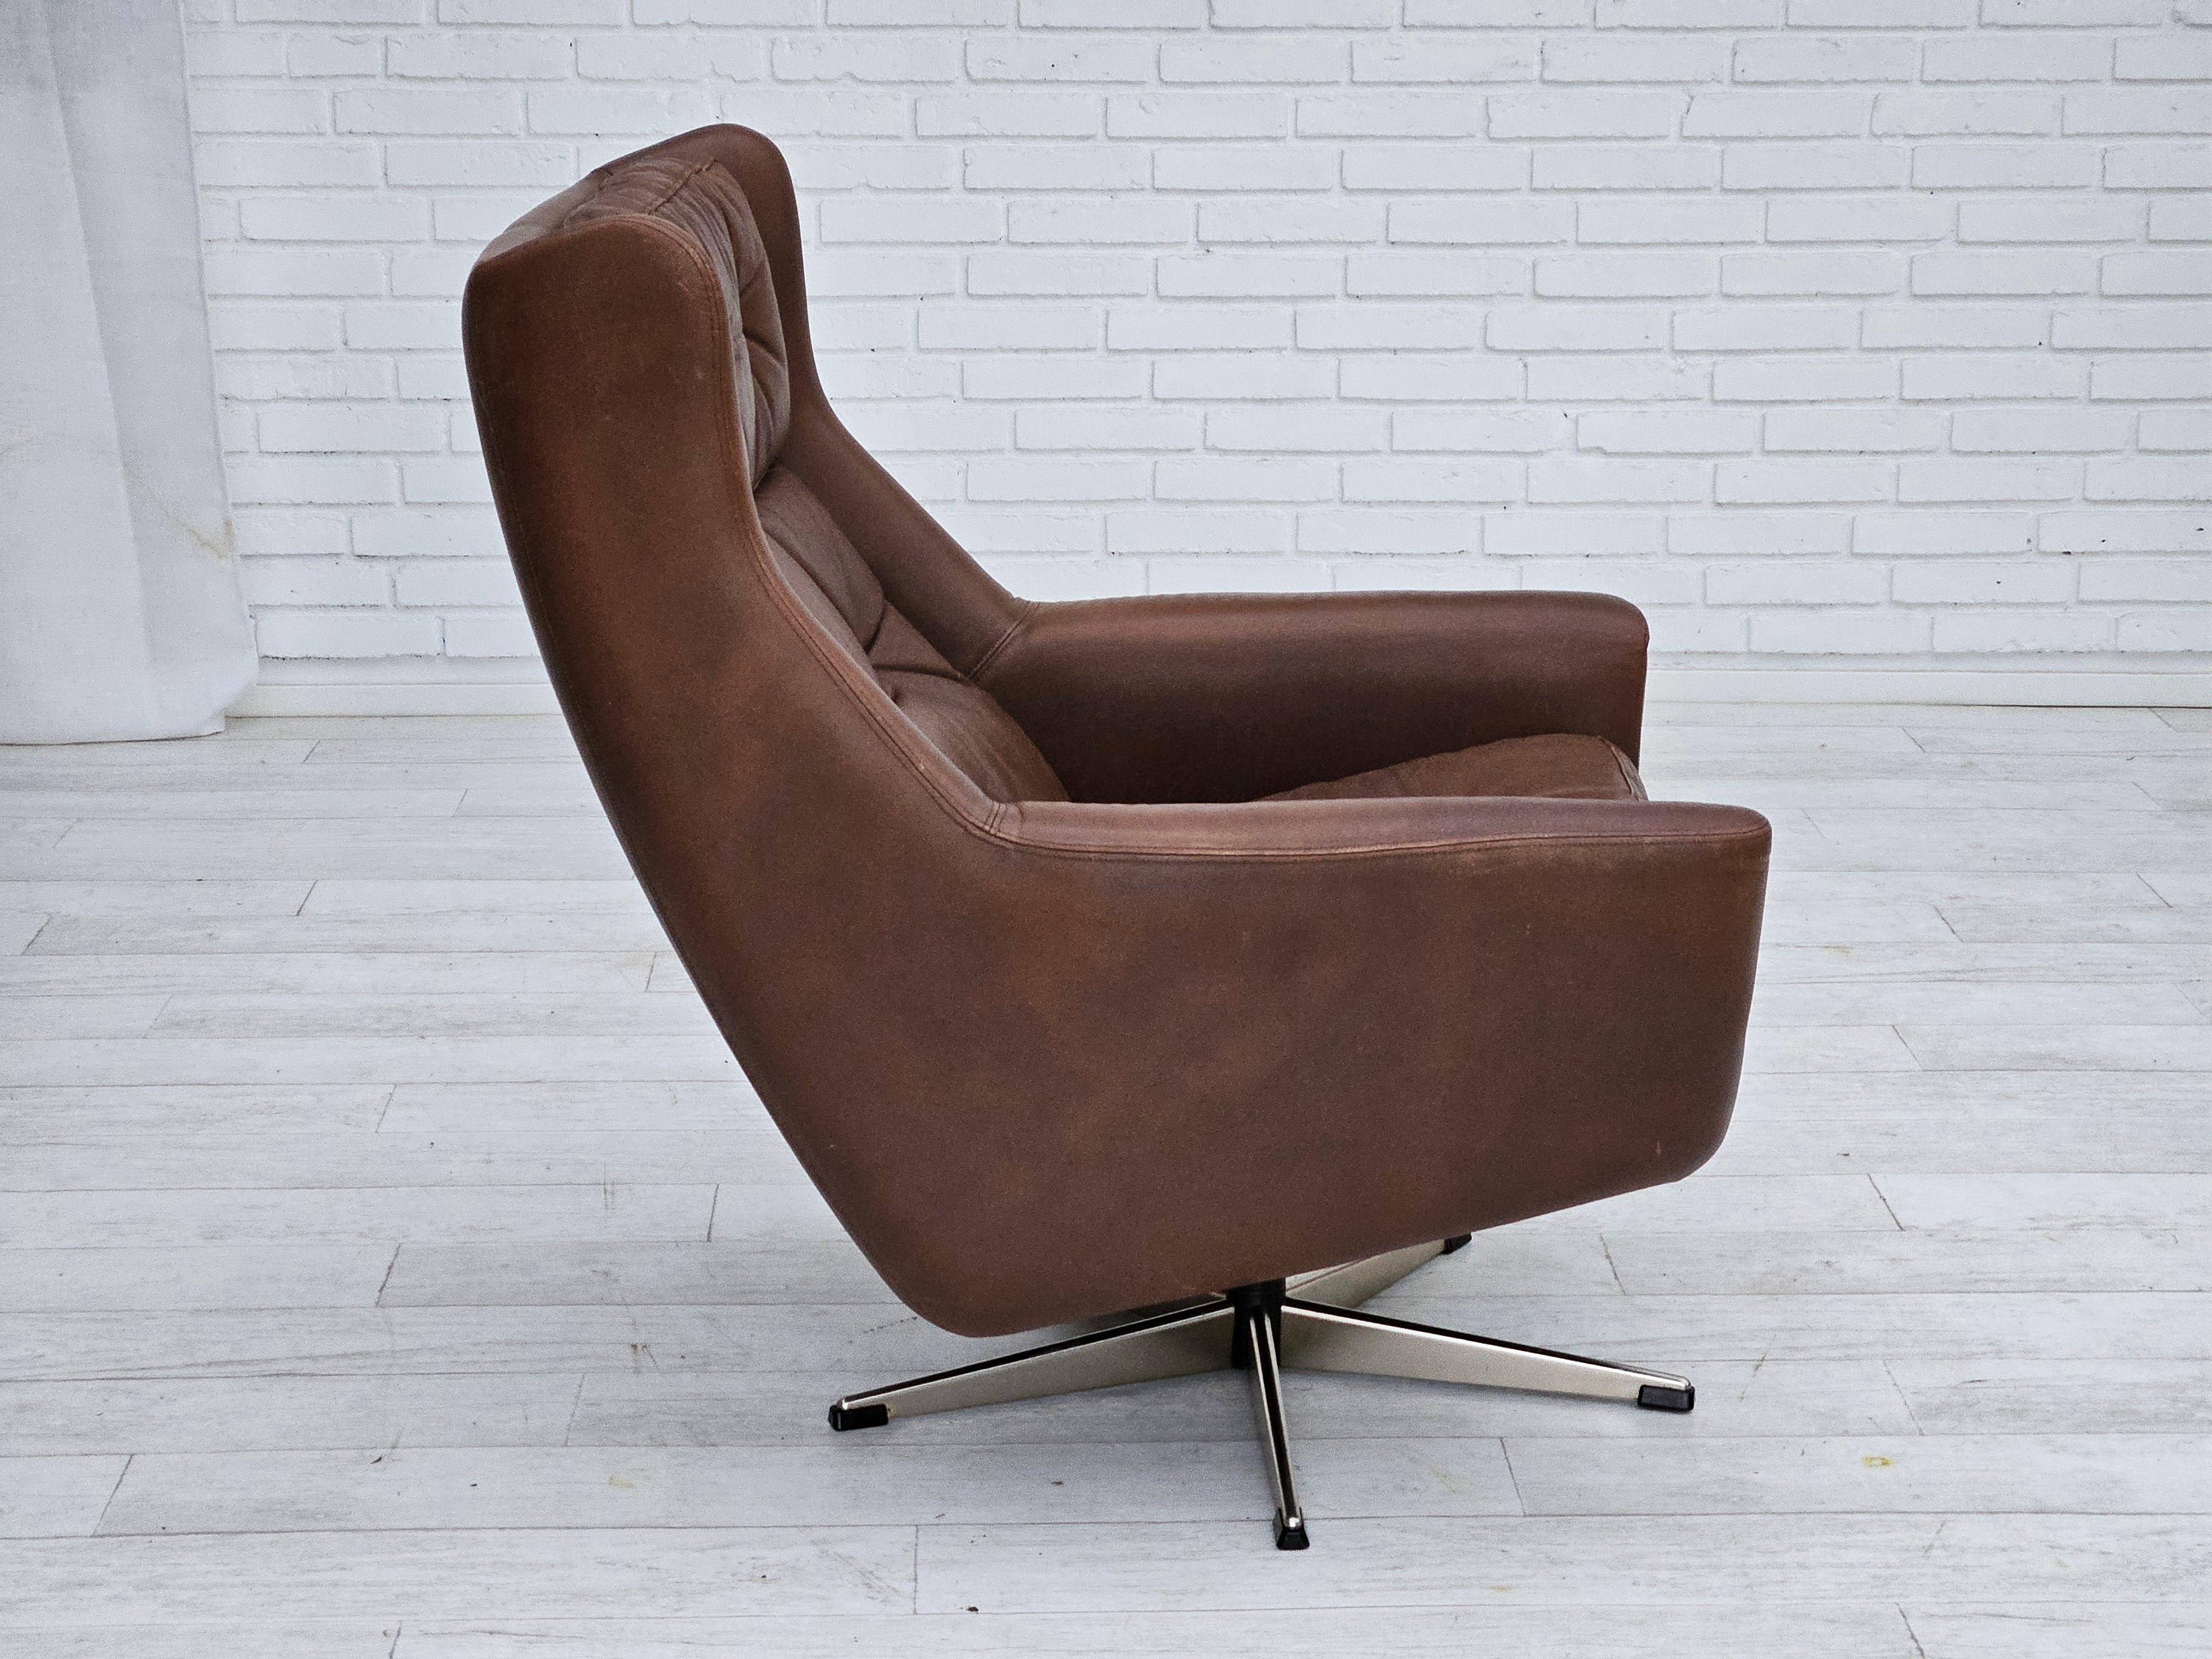 Fin du 20e siècle 1970, chaise pivotante danoise avec pouf, bon état d'origine, cuir. en vente